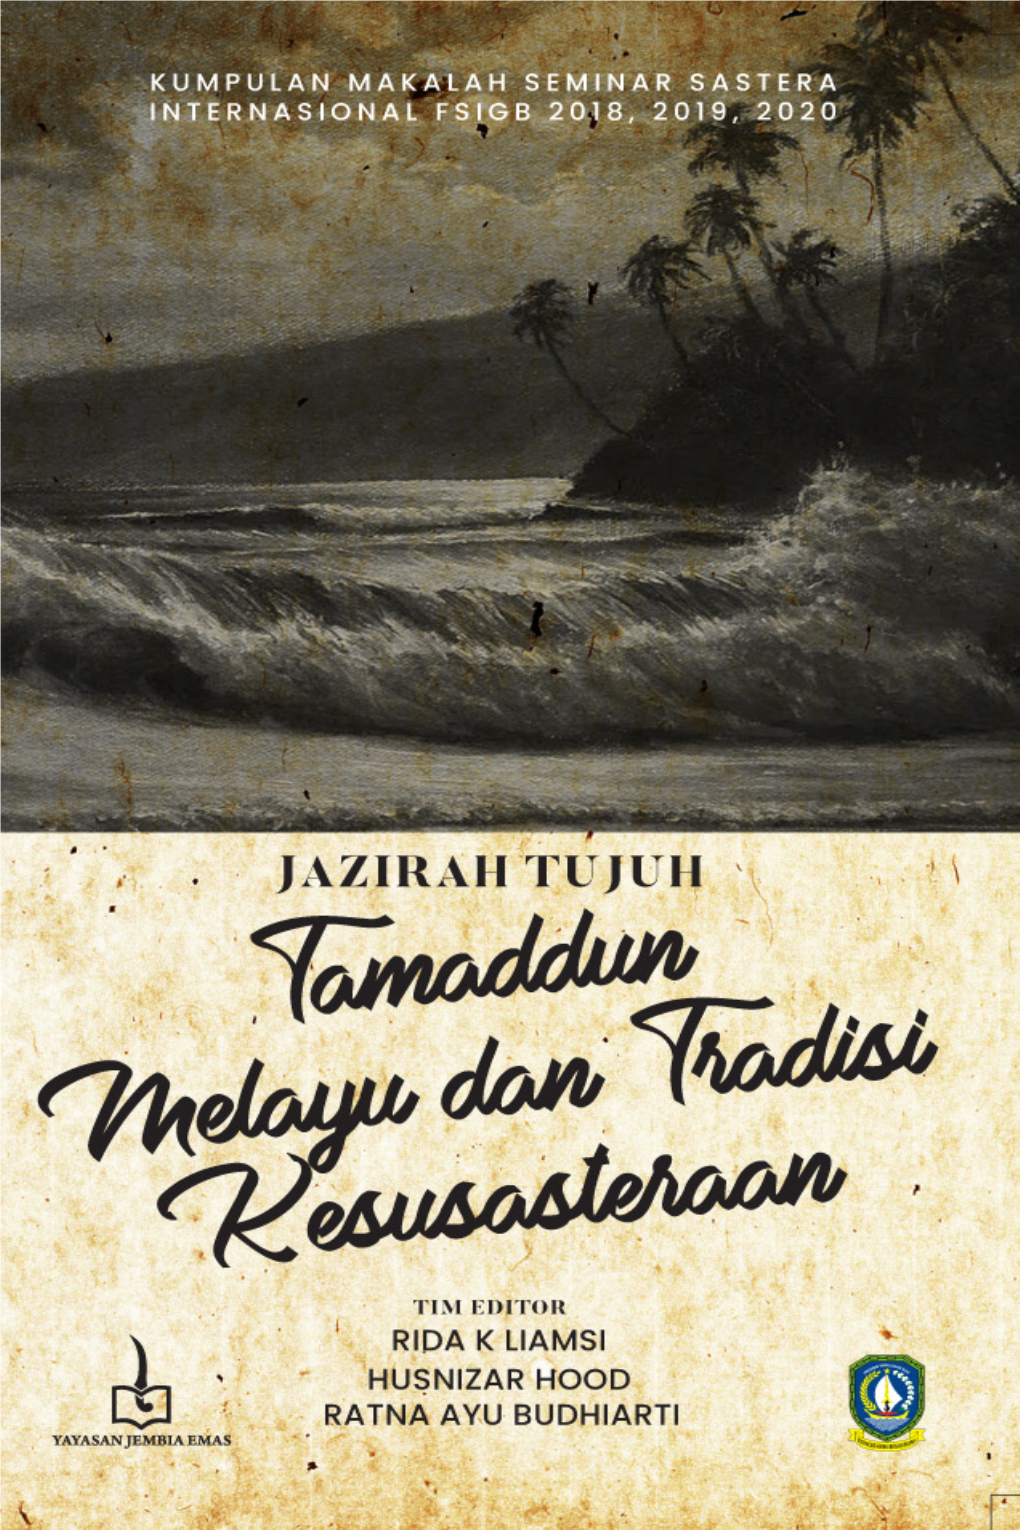 JAZIRAH 7 Ebook Kumpulan Makalah Seminar Sastera FSIGB